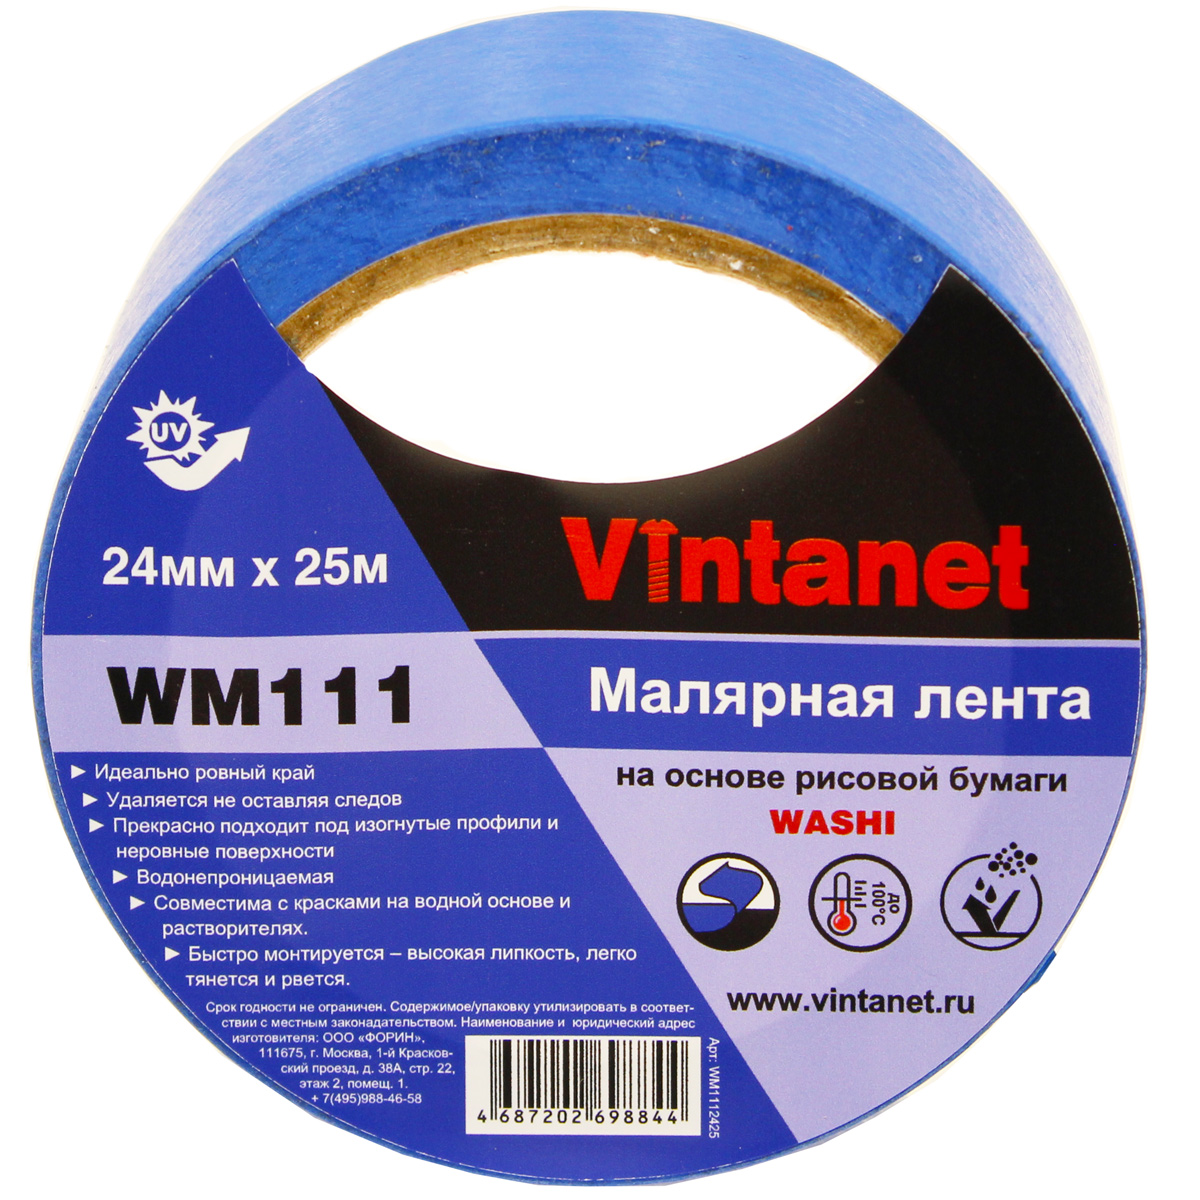 Лента малярная на основе рисовой бумаги Washi, Vintanet WM111, 24мм х 25м, WM1112425